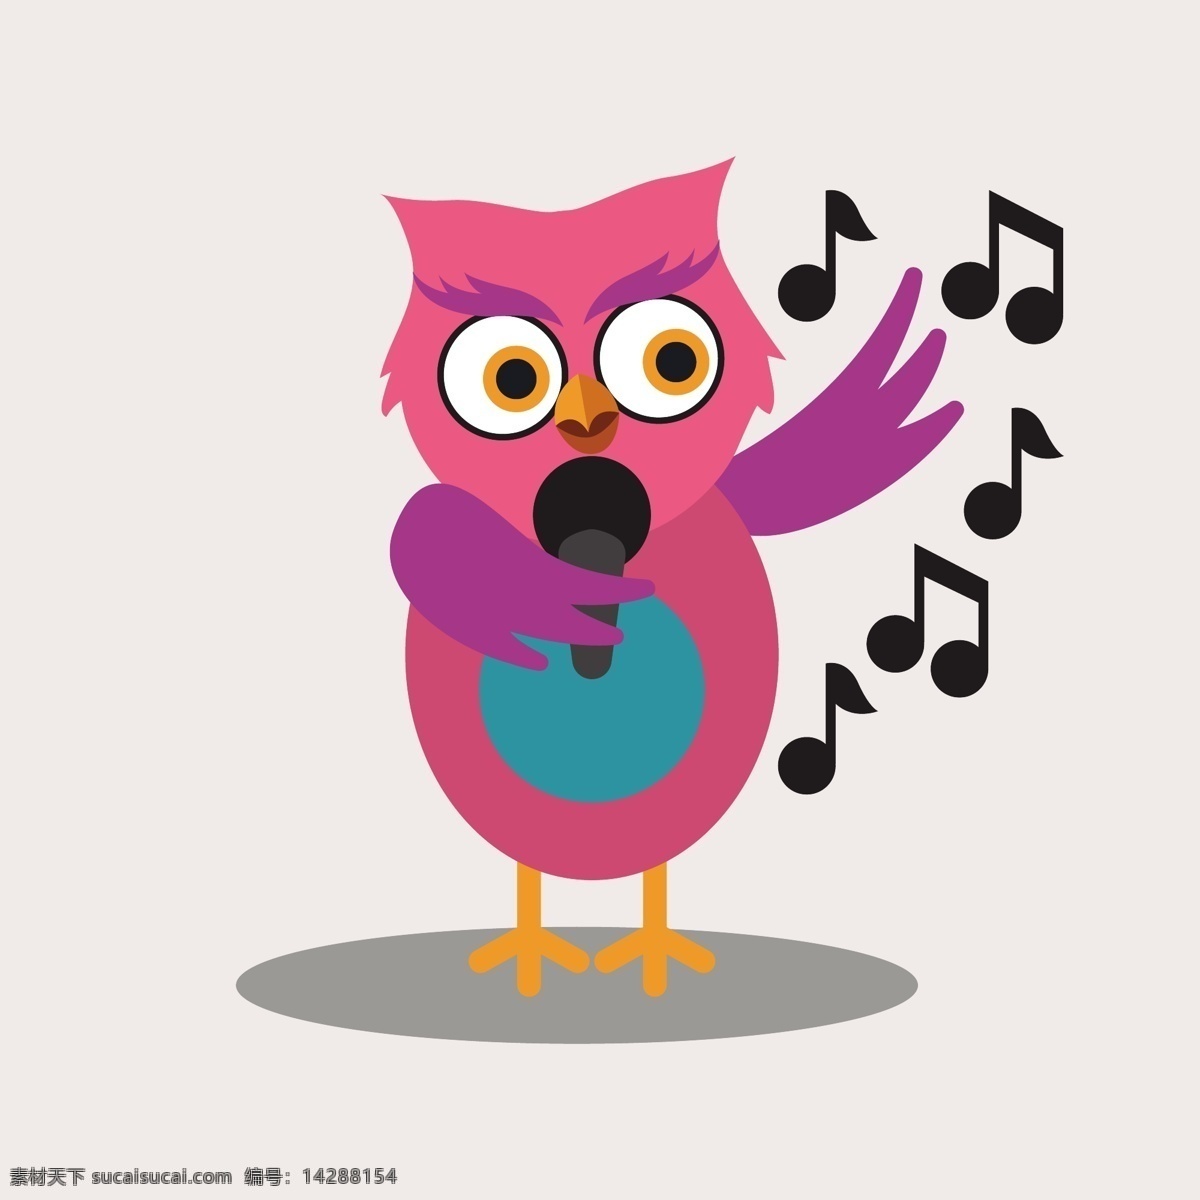 猫头鹰 卡通 人物 可爱 歌手 音乐 动物 音符 爱情 鸟类 七彩 宠物 音乐笔记 麦克风 唱歌 可爱的动物 可爱的小鸟